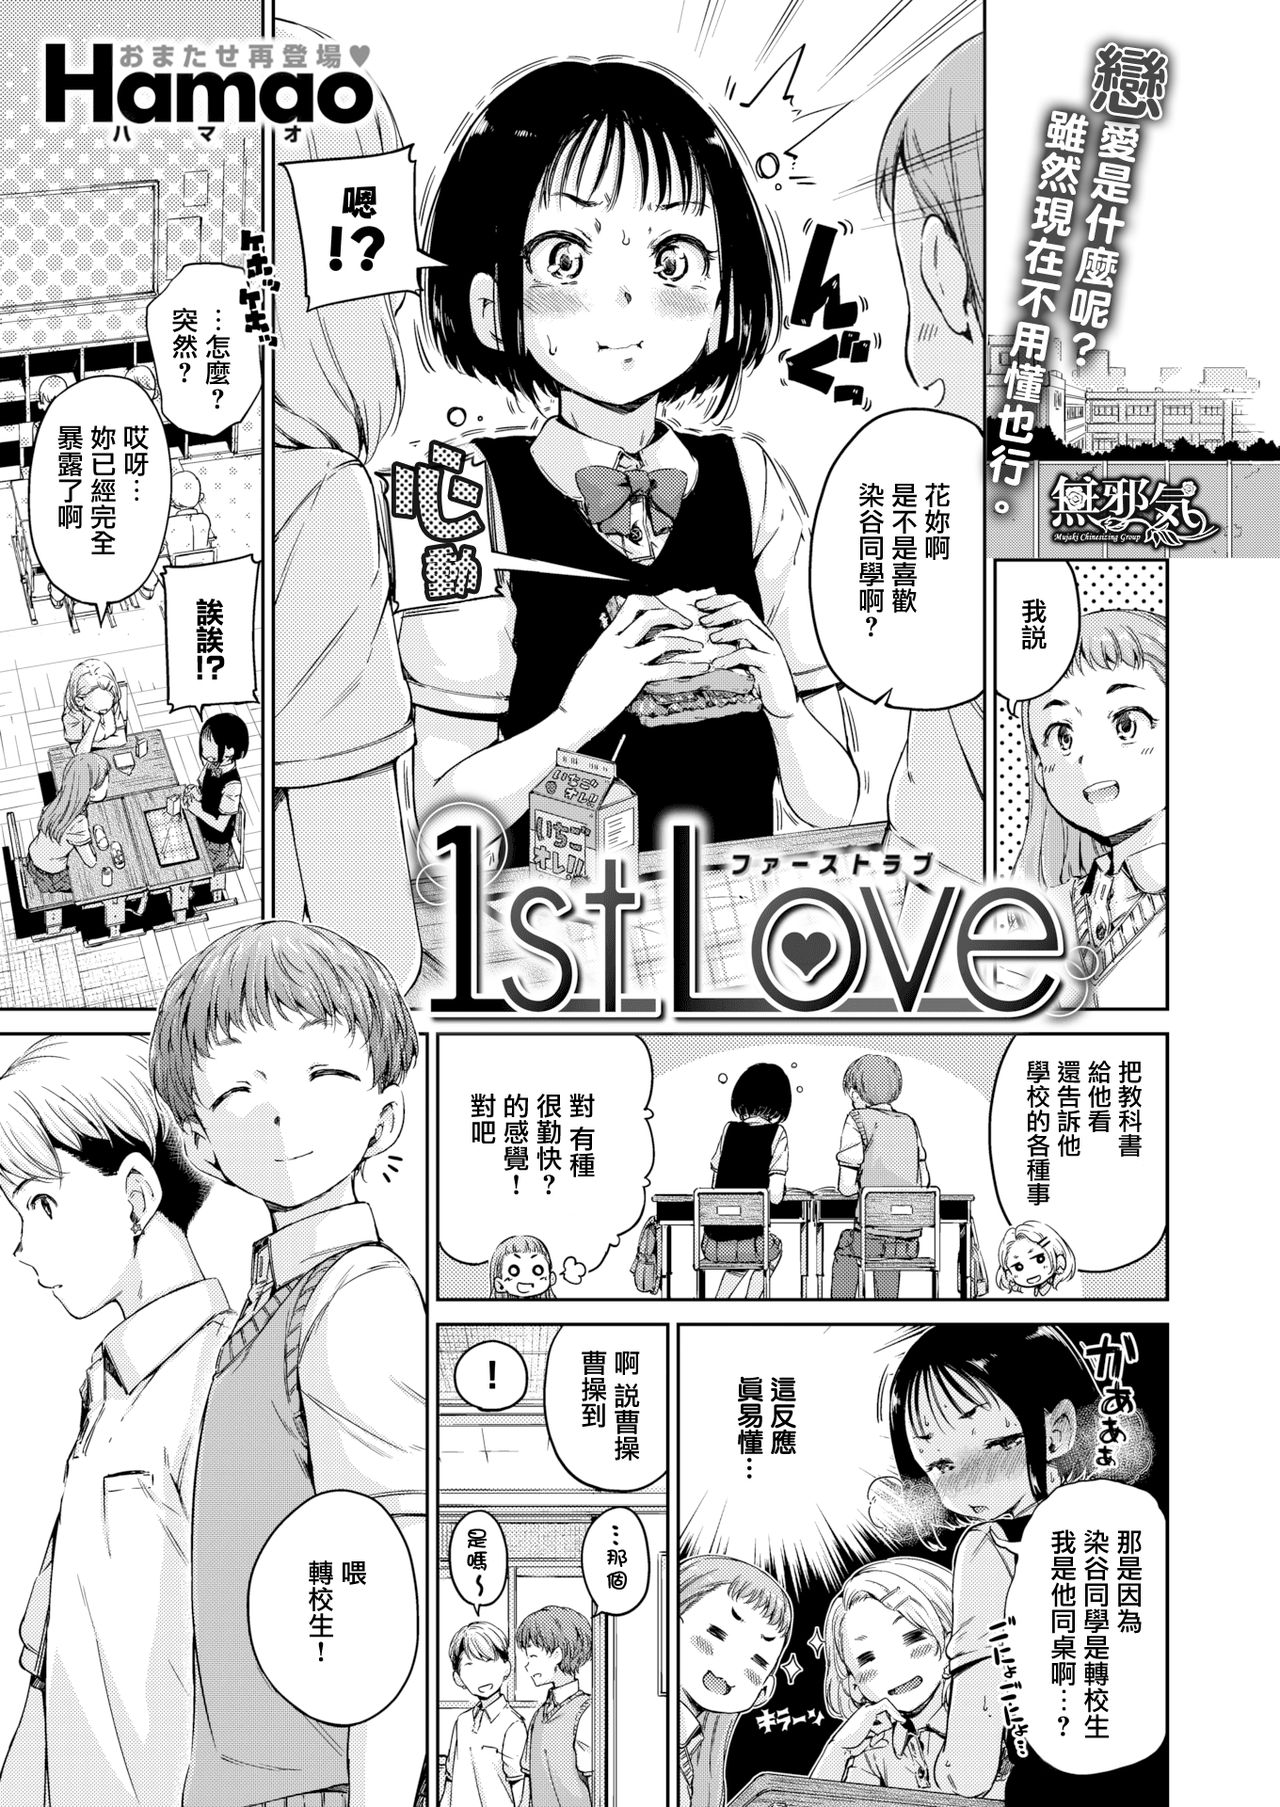 [Hamao] 1st Love (コミックゼロス #55) - 情色卡漫 -